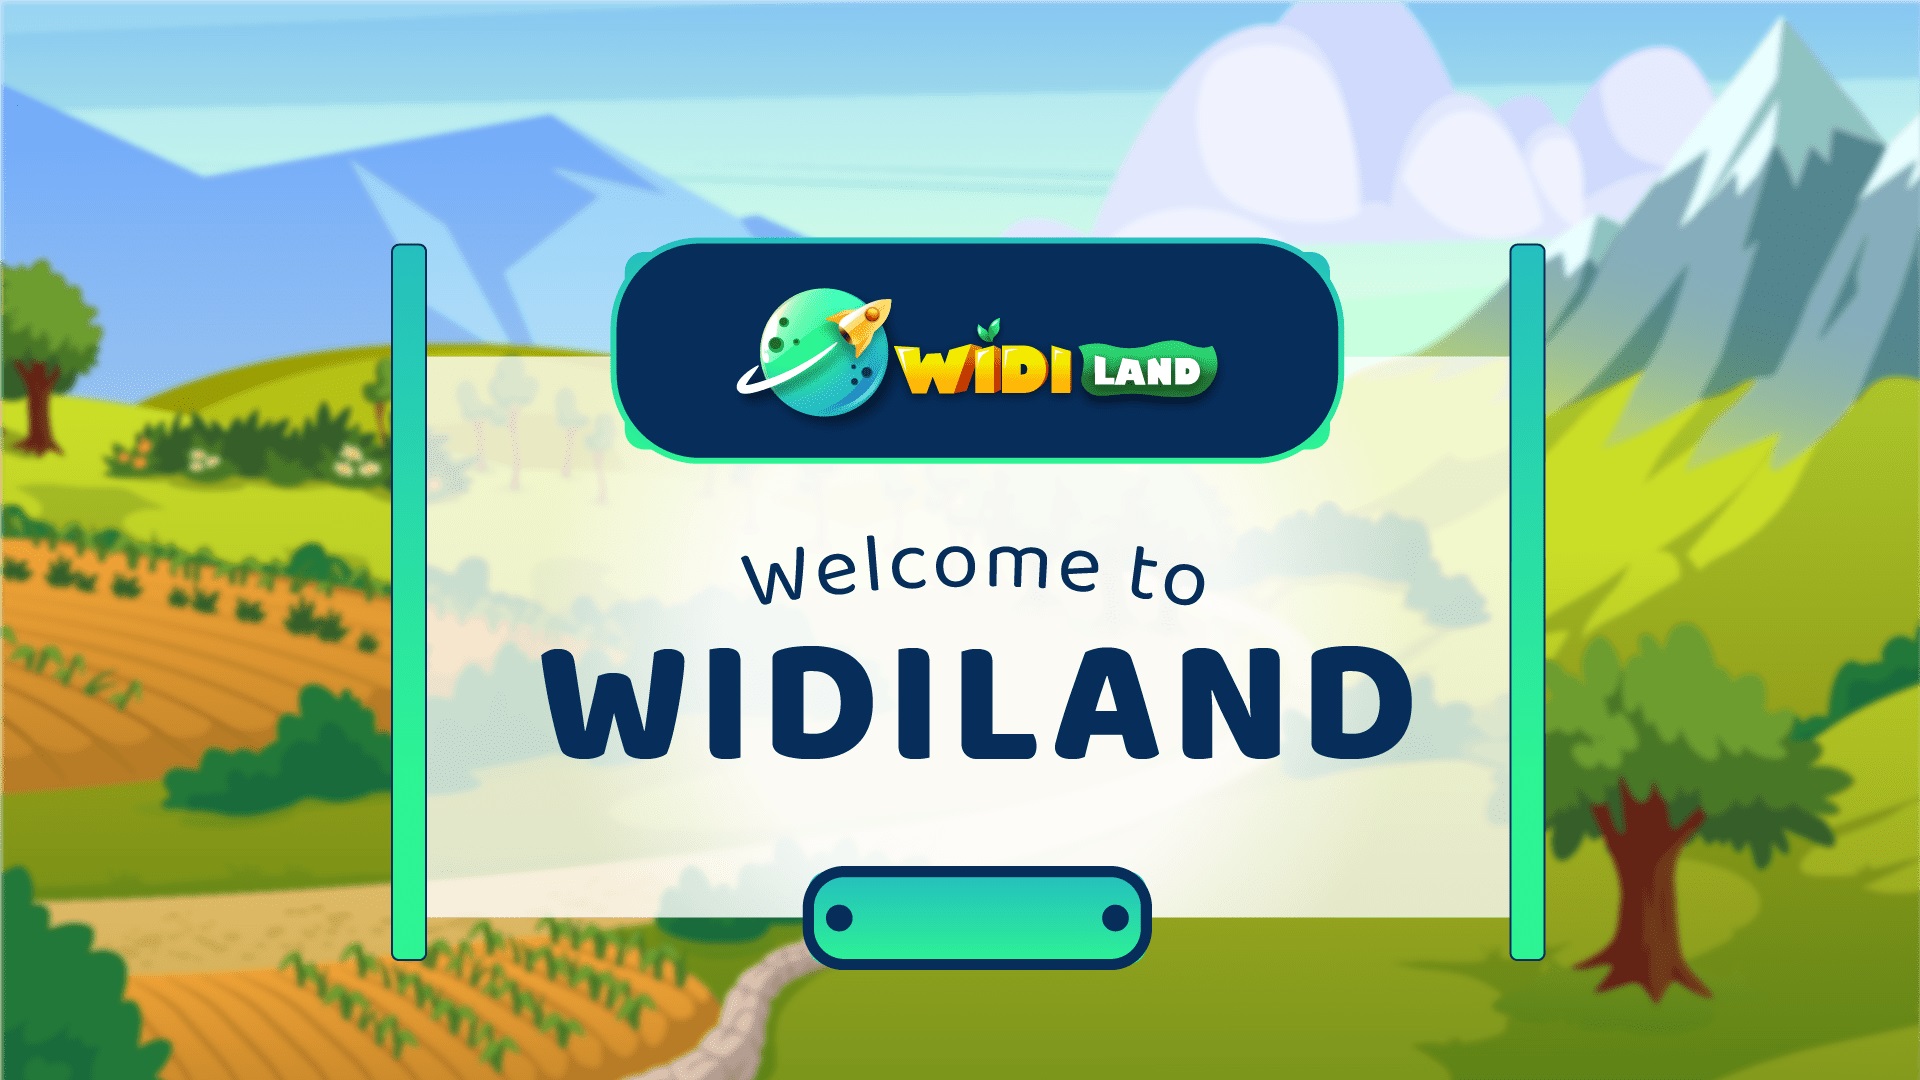 Tổng kết sự kiện IDO của WidiLand (WIDI) và thông báo mở bán chính thức